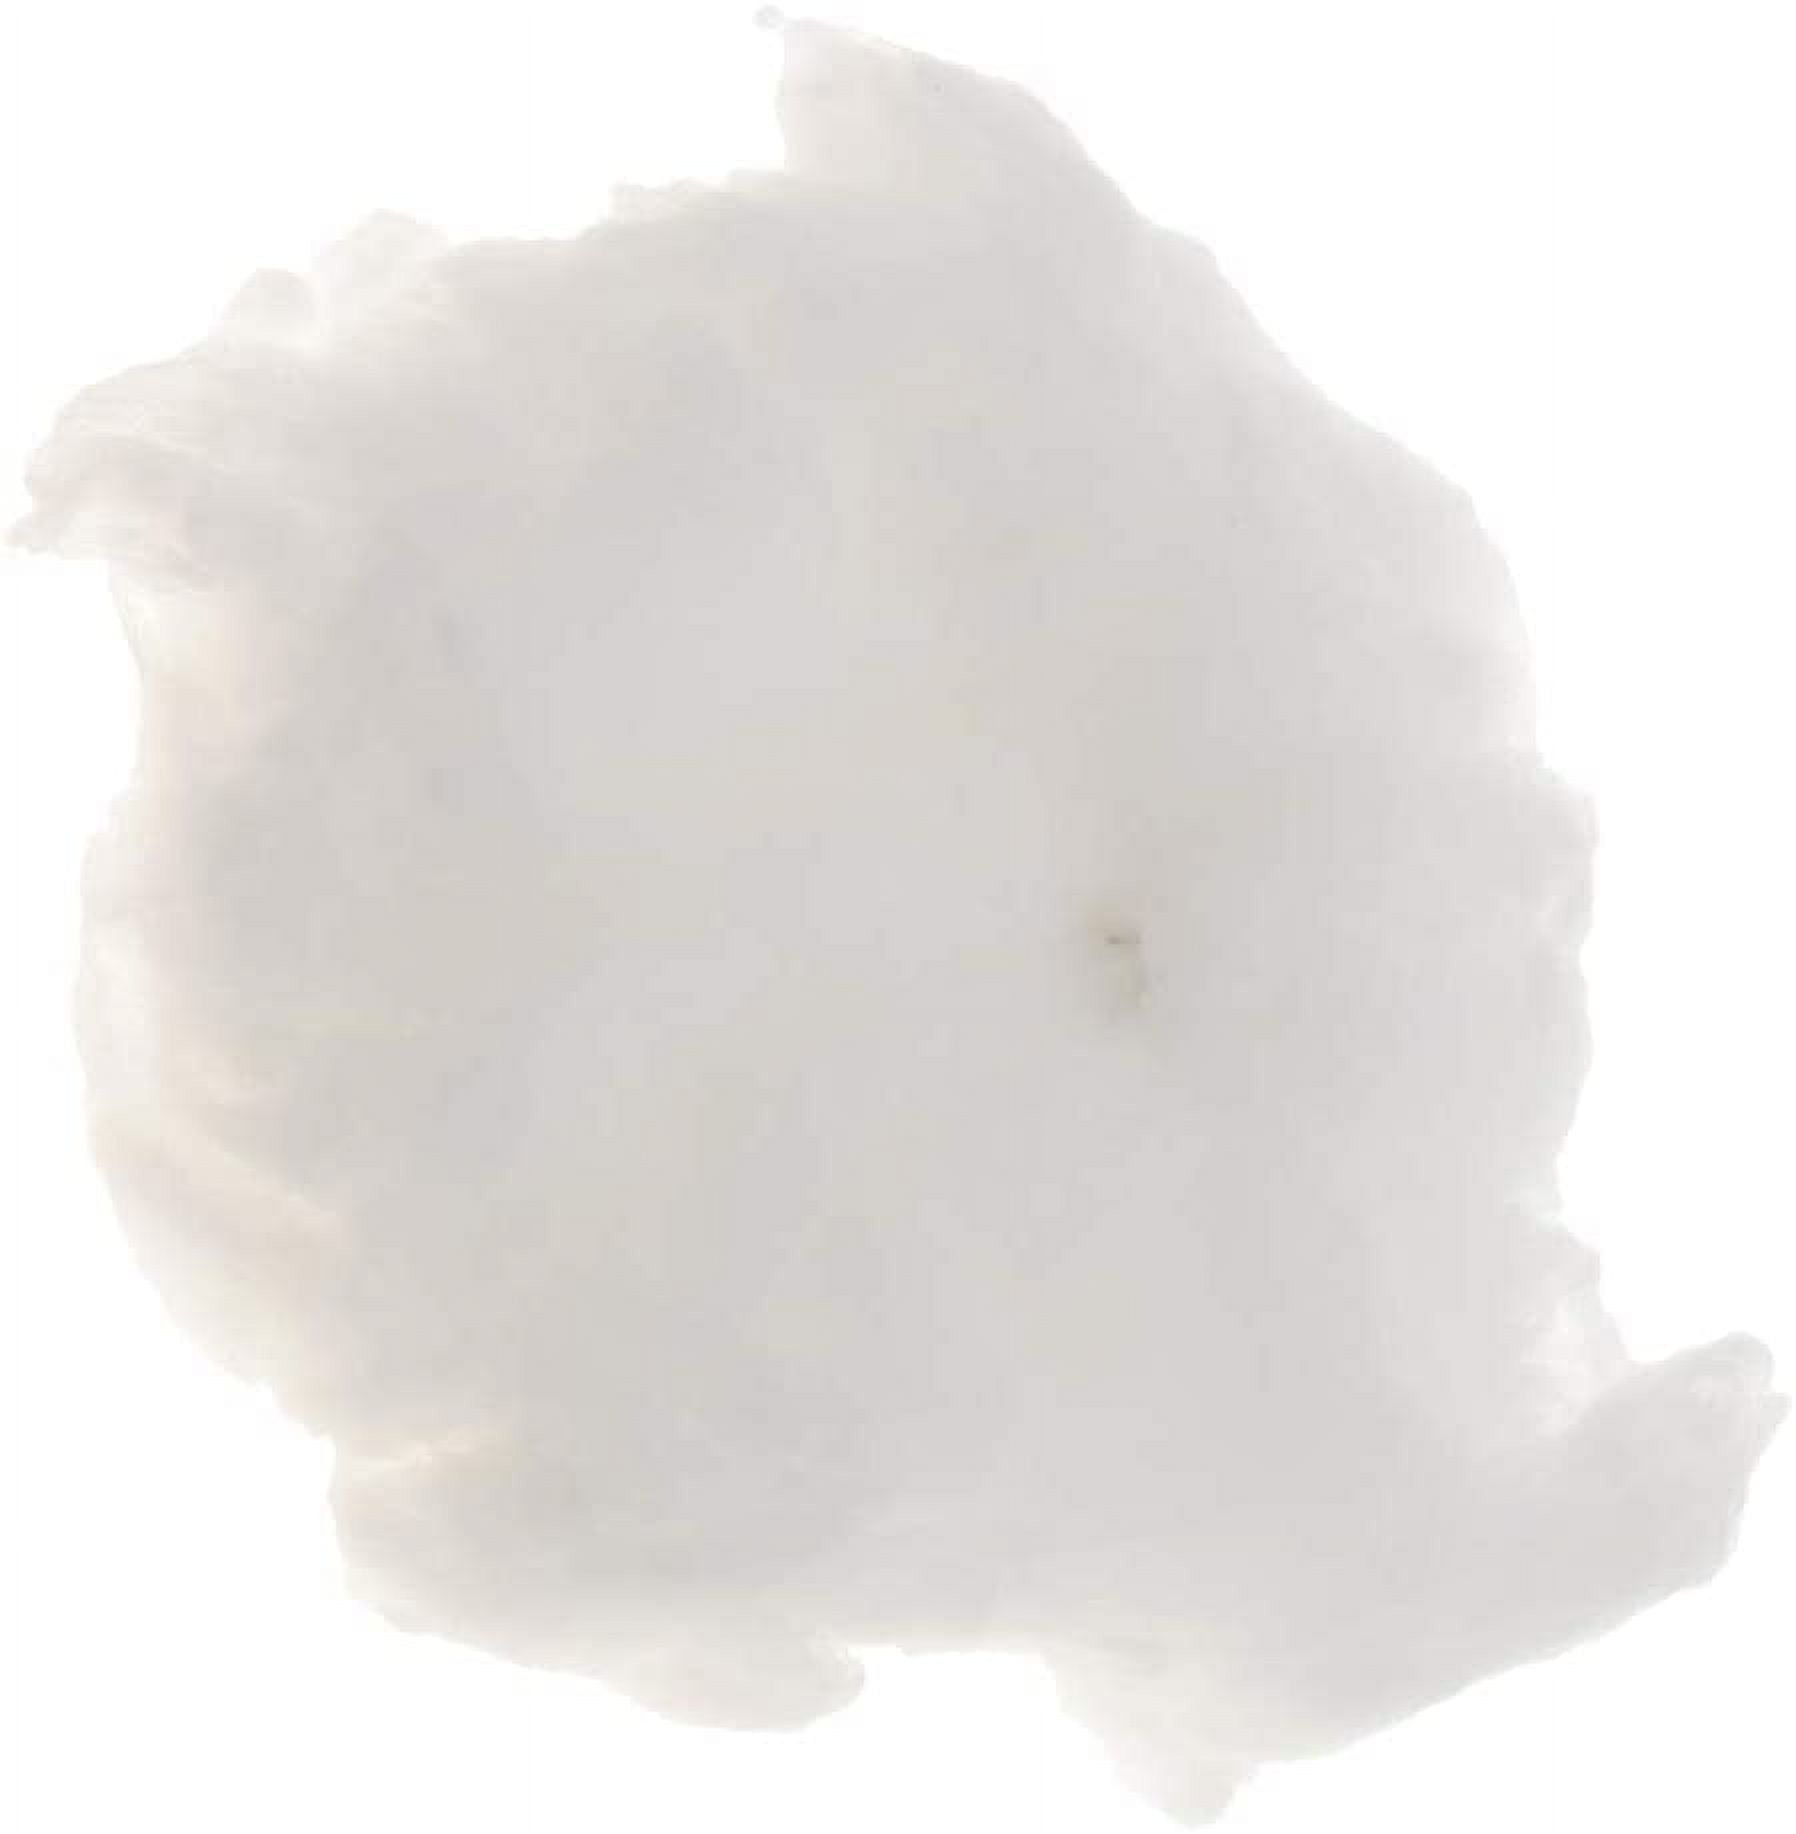 BCOATH 6pcs Cotton Cloud Decoration Fake Cloud Toys 3D Cotton Cloud Cotton  Fake Cloud Imitation Cotton Cloud Nursery Hanging Decor The Clouds